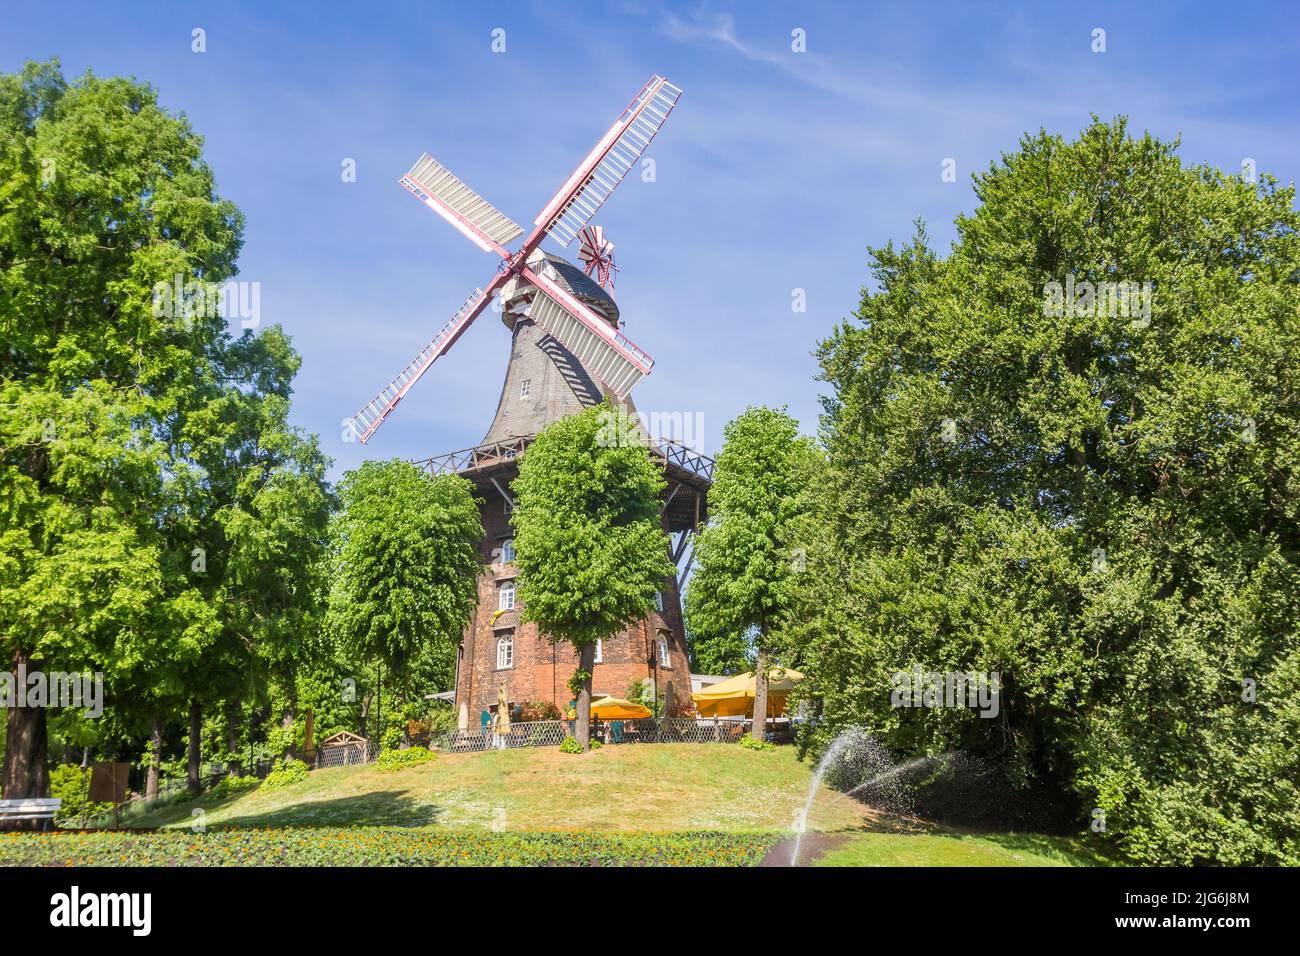 Histórico molino de viento en el parque de la ciudad hanseática de Bremen, Alemania Foto de stock